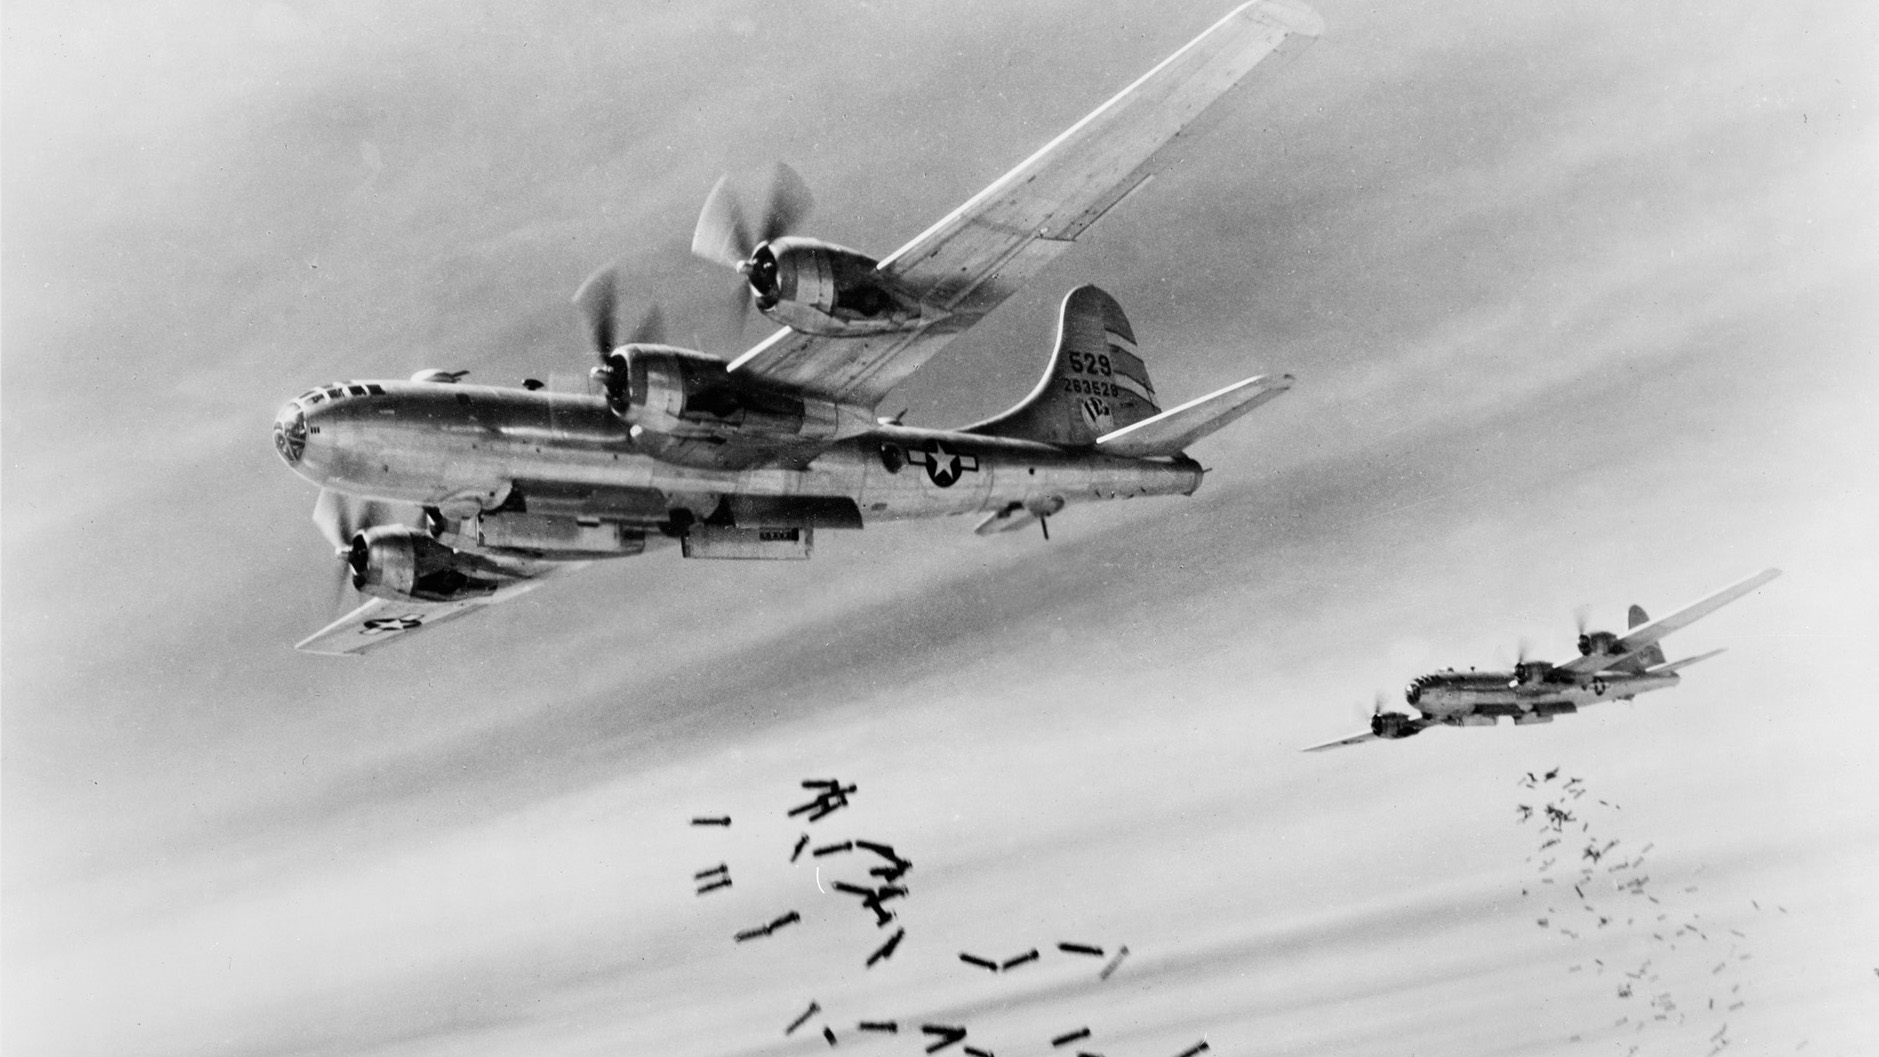 b - 29超级空中堡垒轰炸机雨破坏日本在1945年。